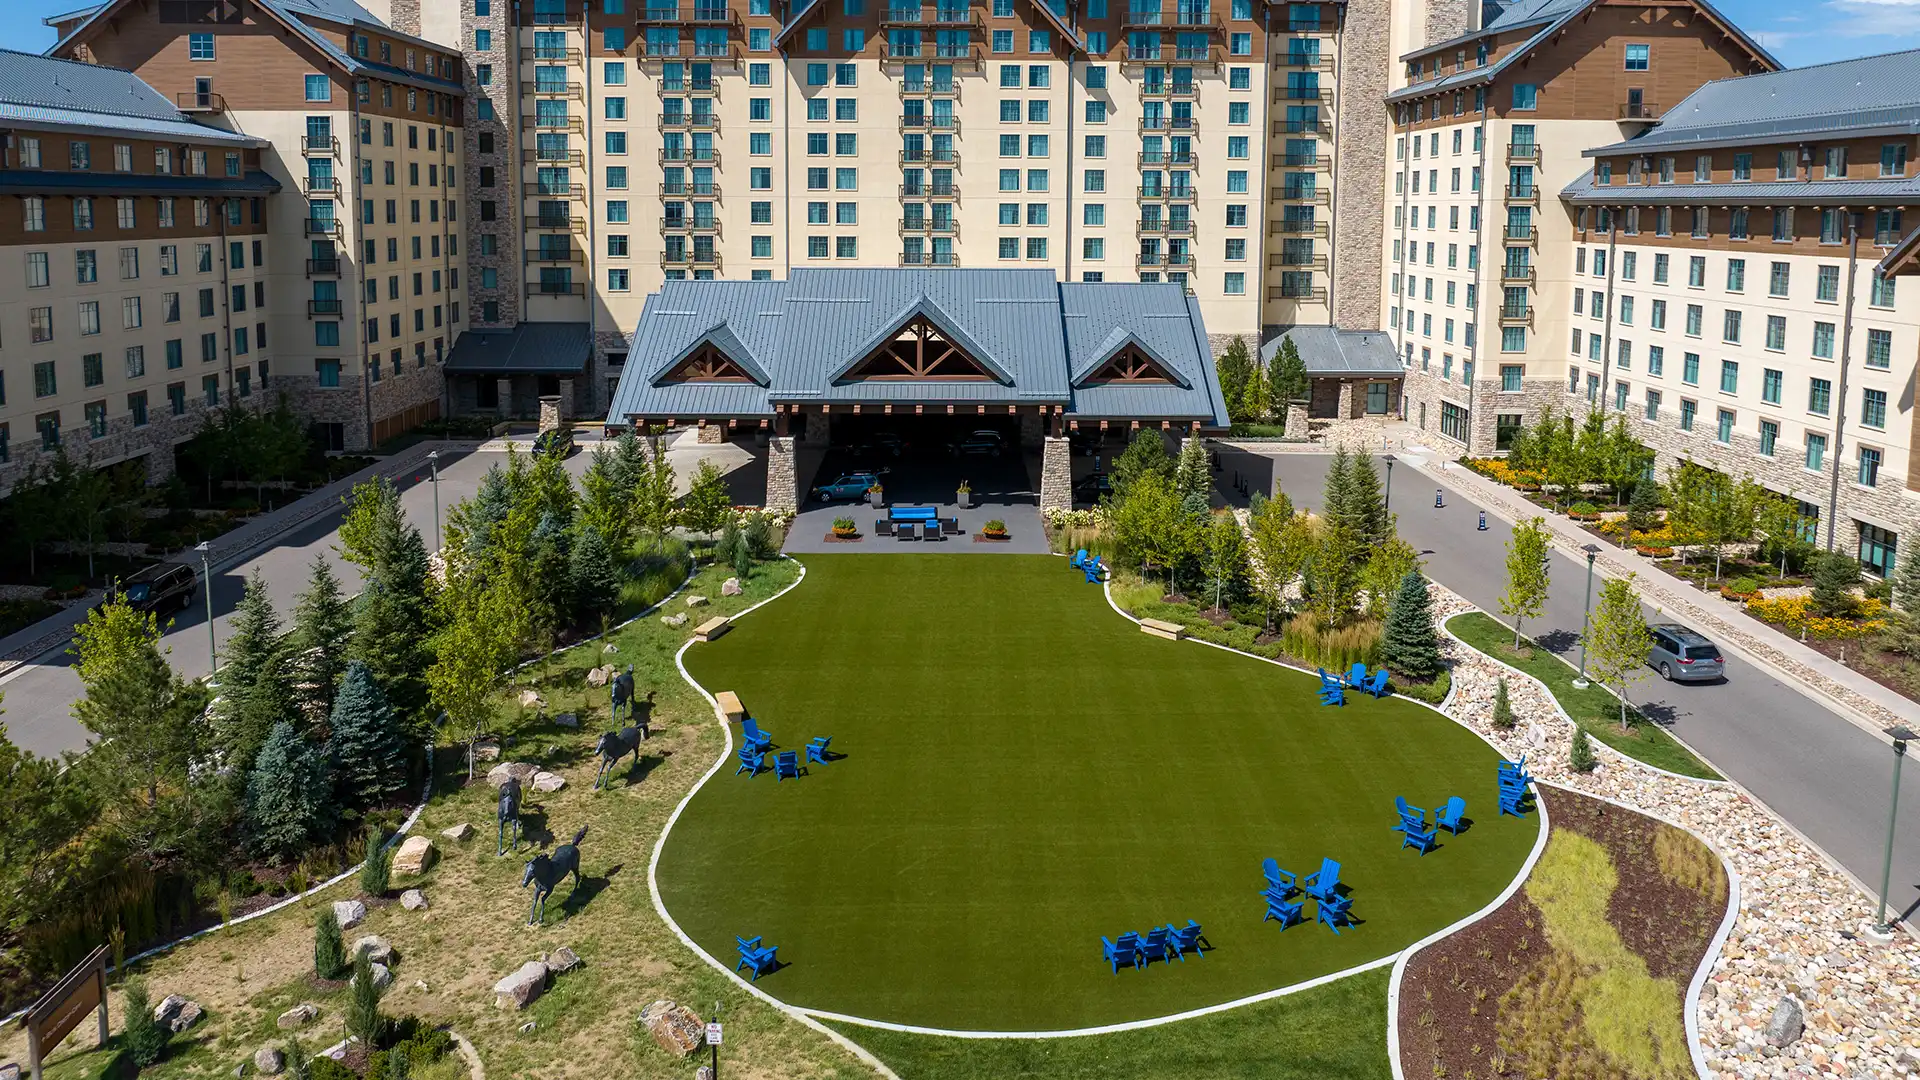 Denver Area Alpine Resort offre à ses clients des espaces extérieurs luxueux